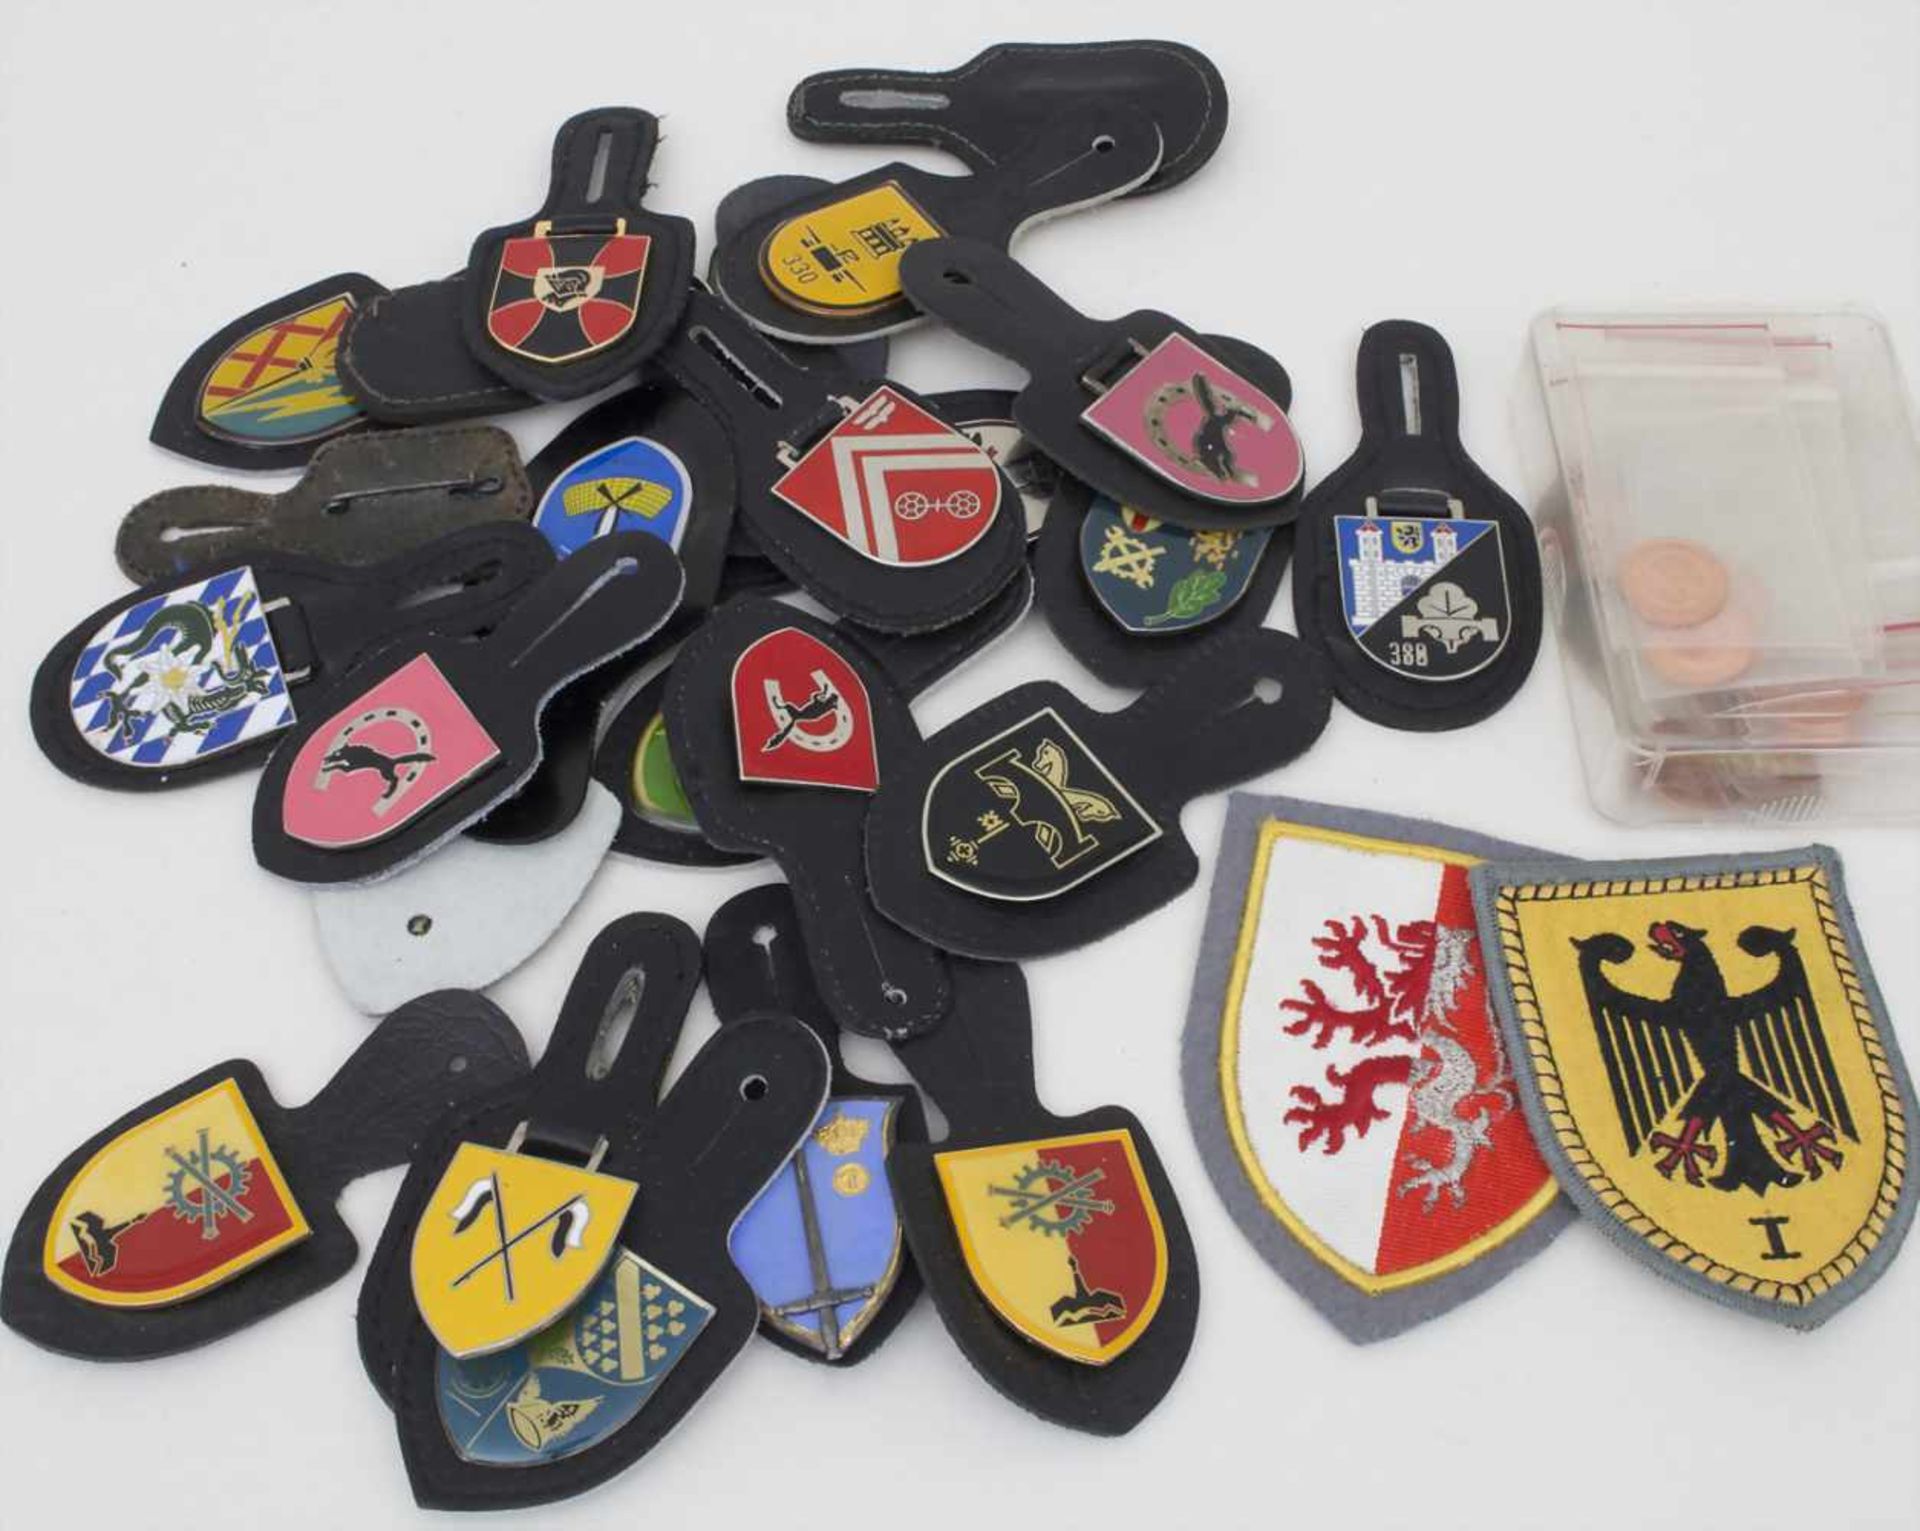 Sammlung von 25 Bundeswehr Verbandsabzeichen / A collection of 25 Bundeswehr Association